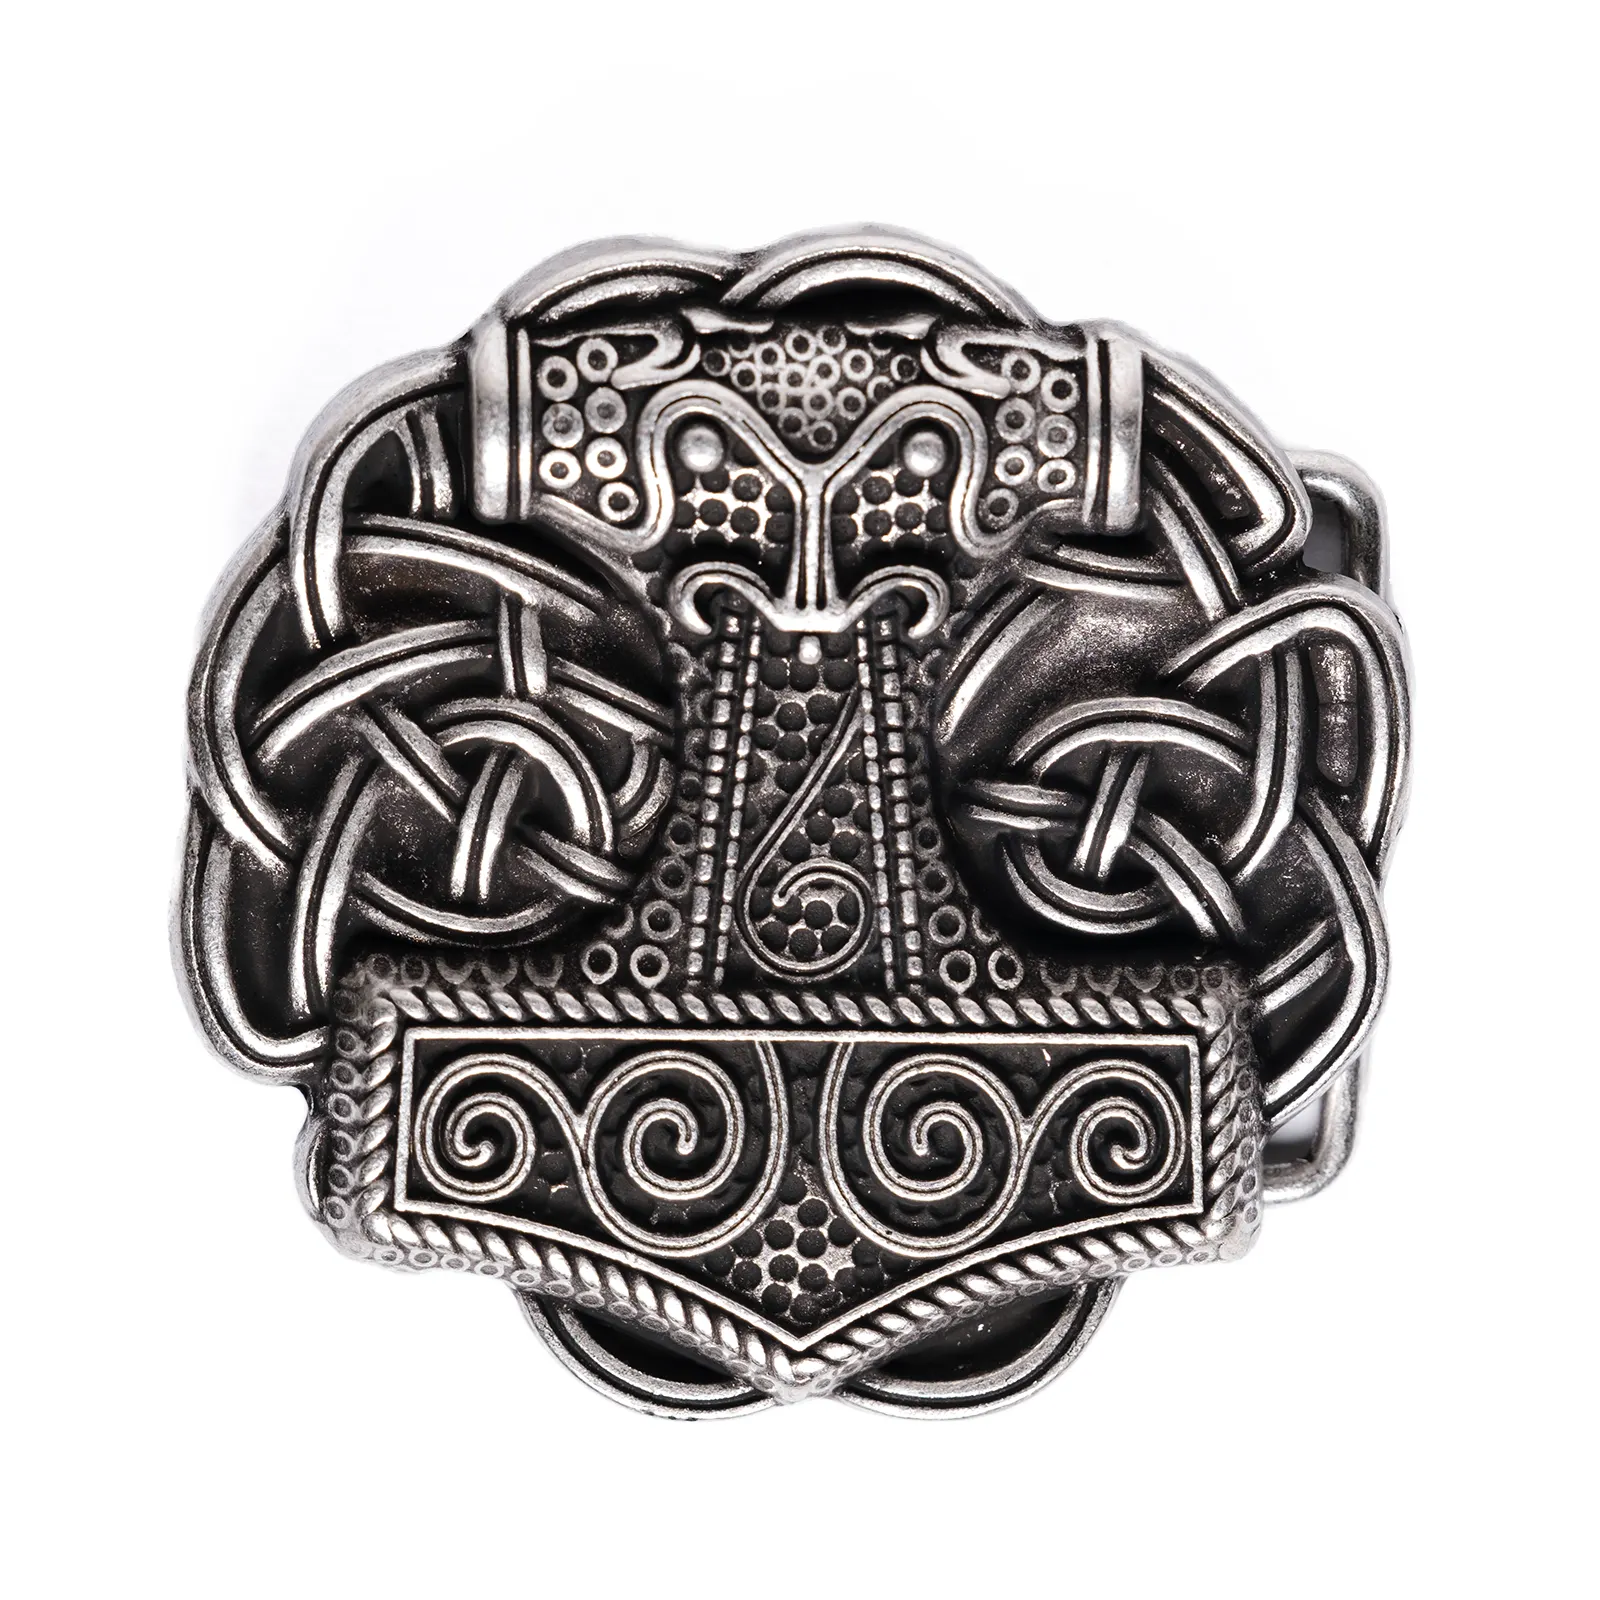 Gürtels chnalle verziert mit Anker design für 4cm Gürtel mit antikem silbernem galvanischem Finish aus Italien